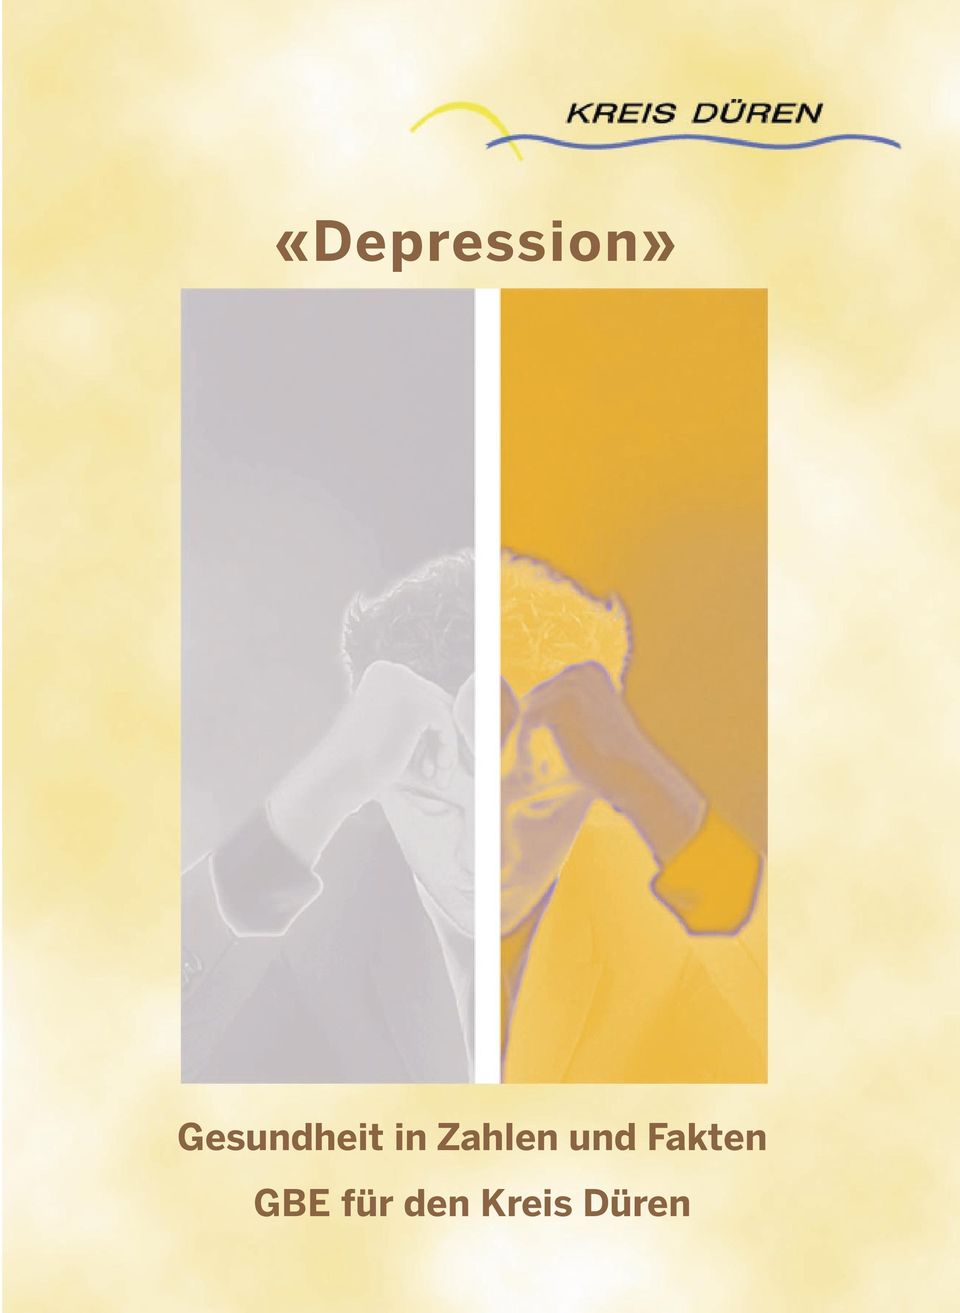 Gesundheitssystem als auch in der Gesellschaft. Das Bündnis gegen Depression, welches auch in der Region vertreten ist, hat sich des Themas Depression angenommen.